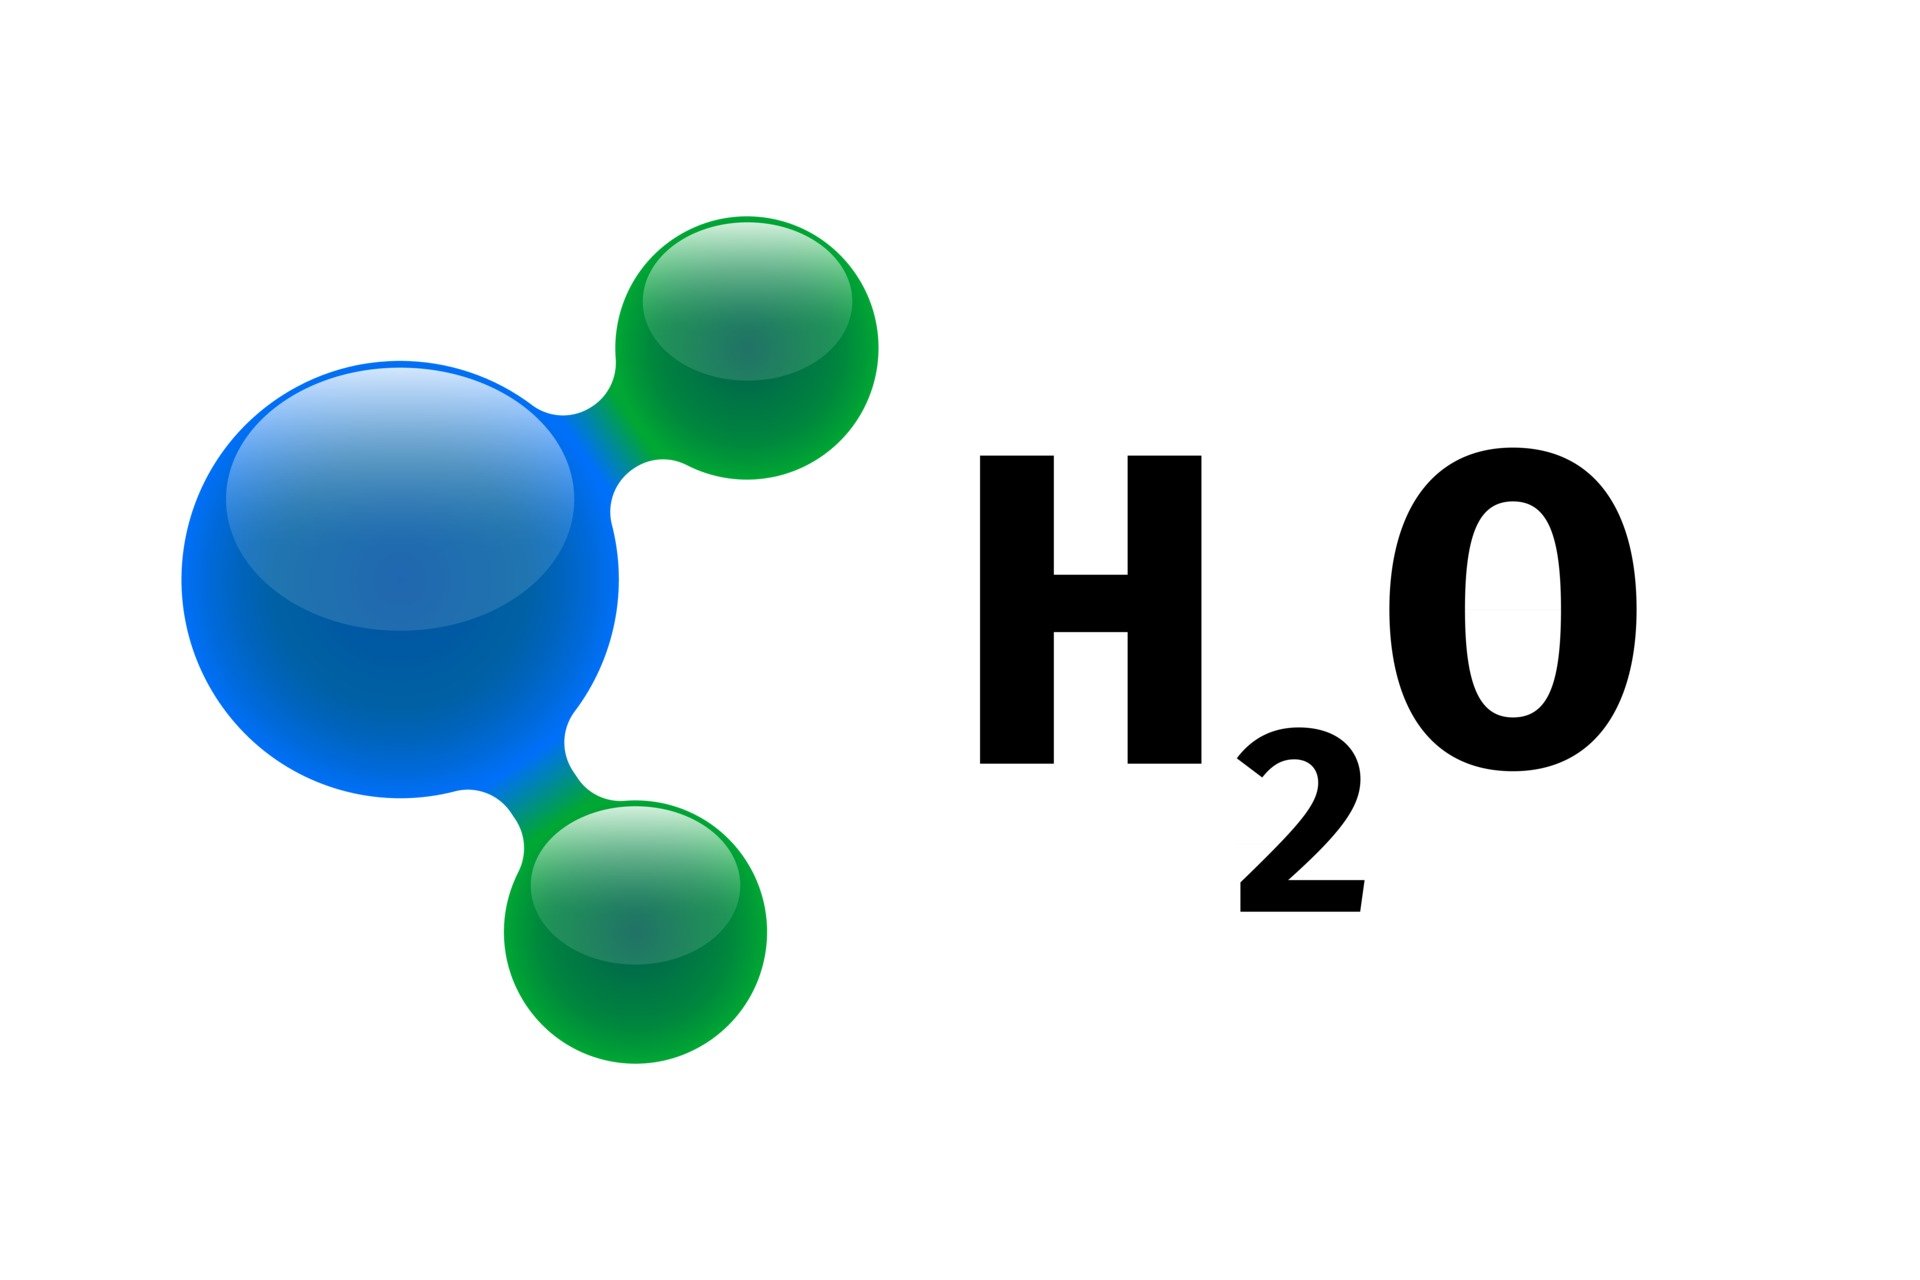 Строение молекулы воды (h2o), схема и примеры